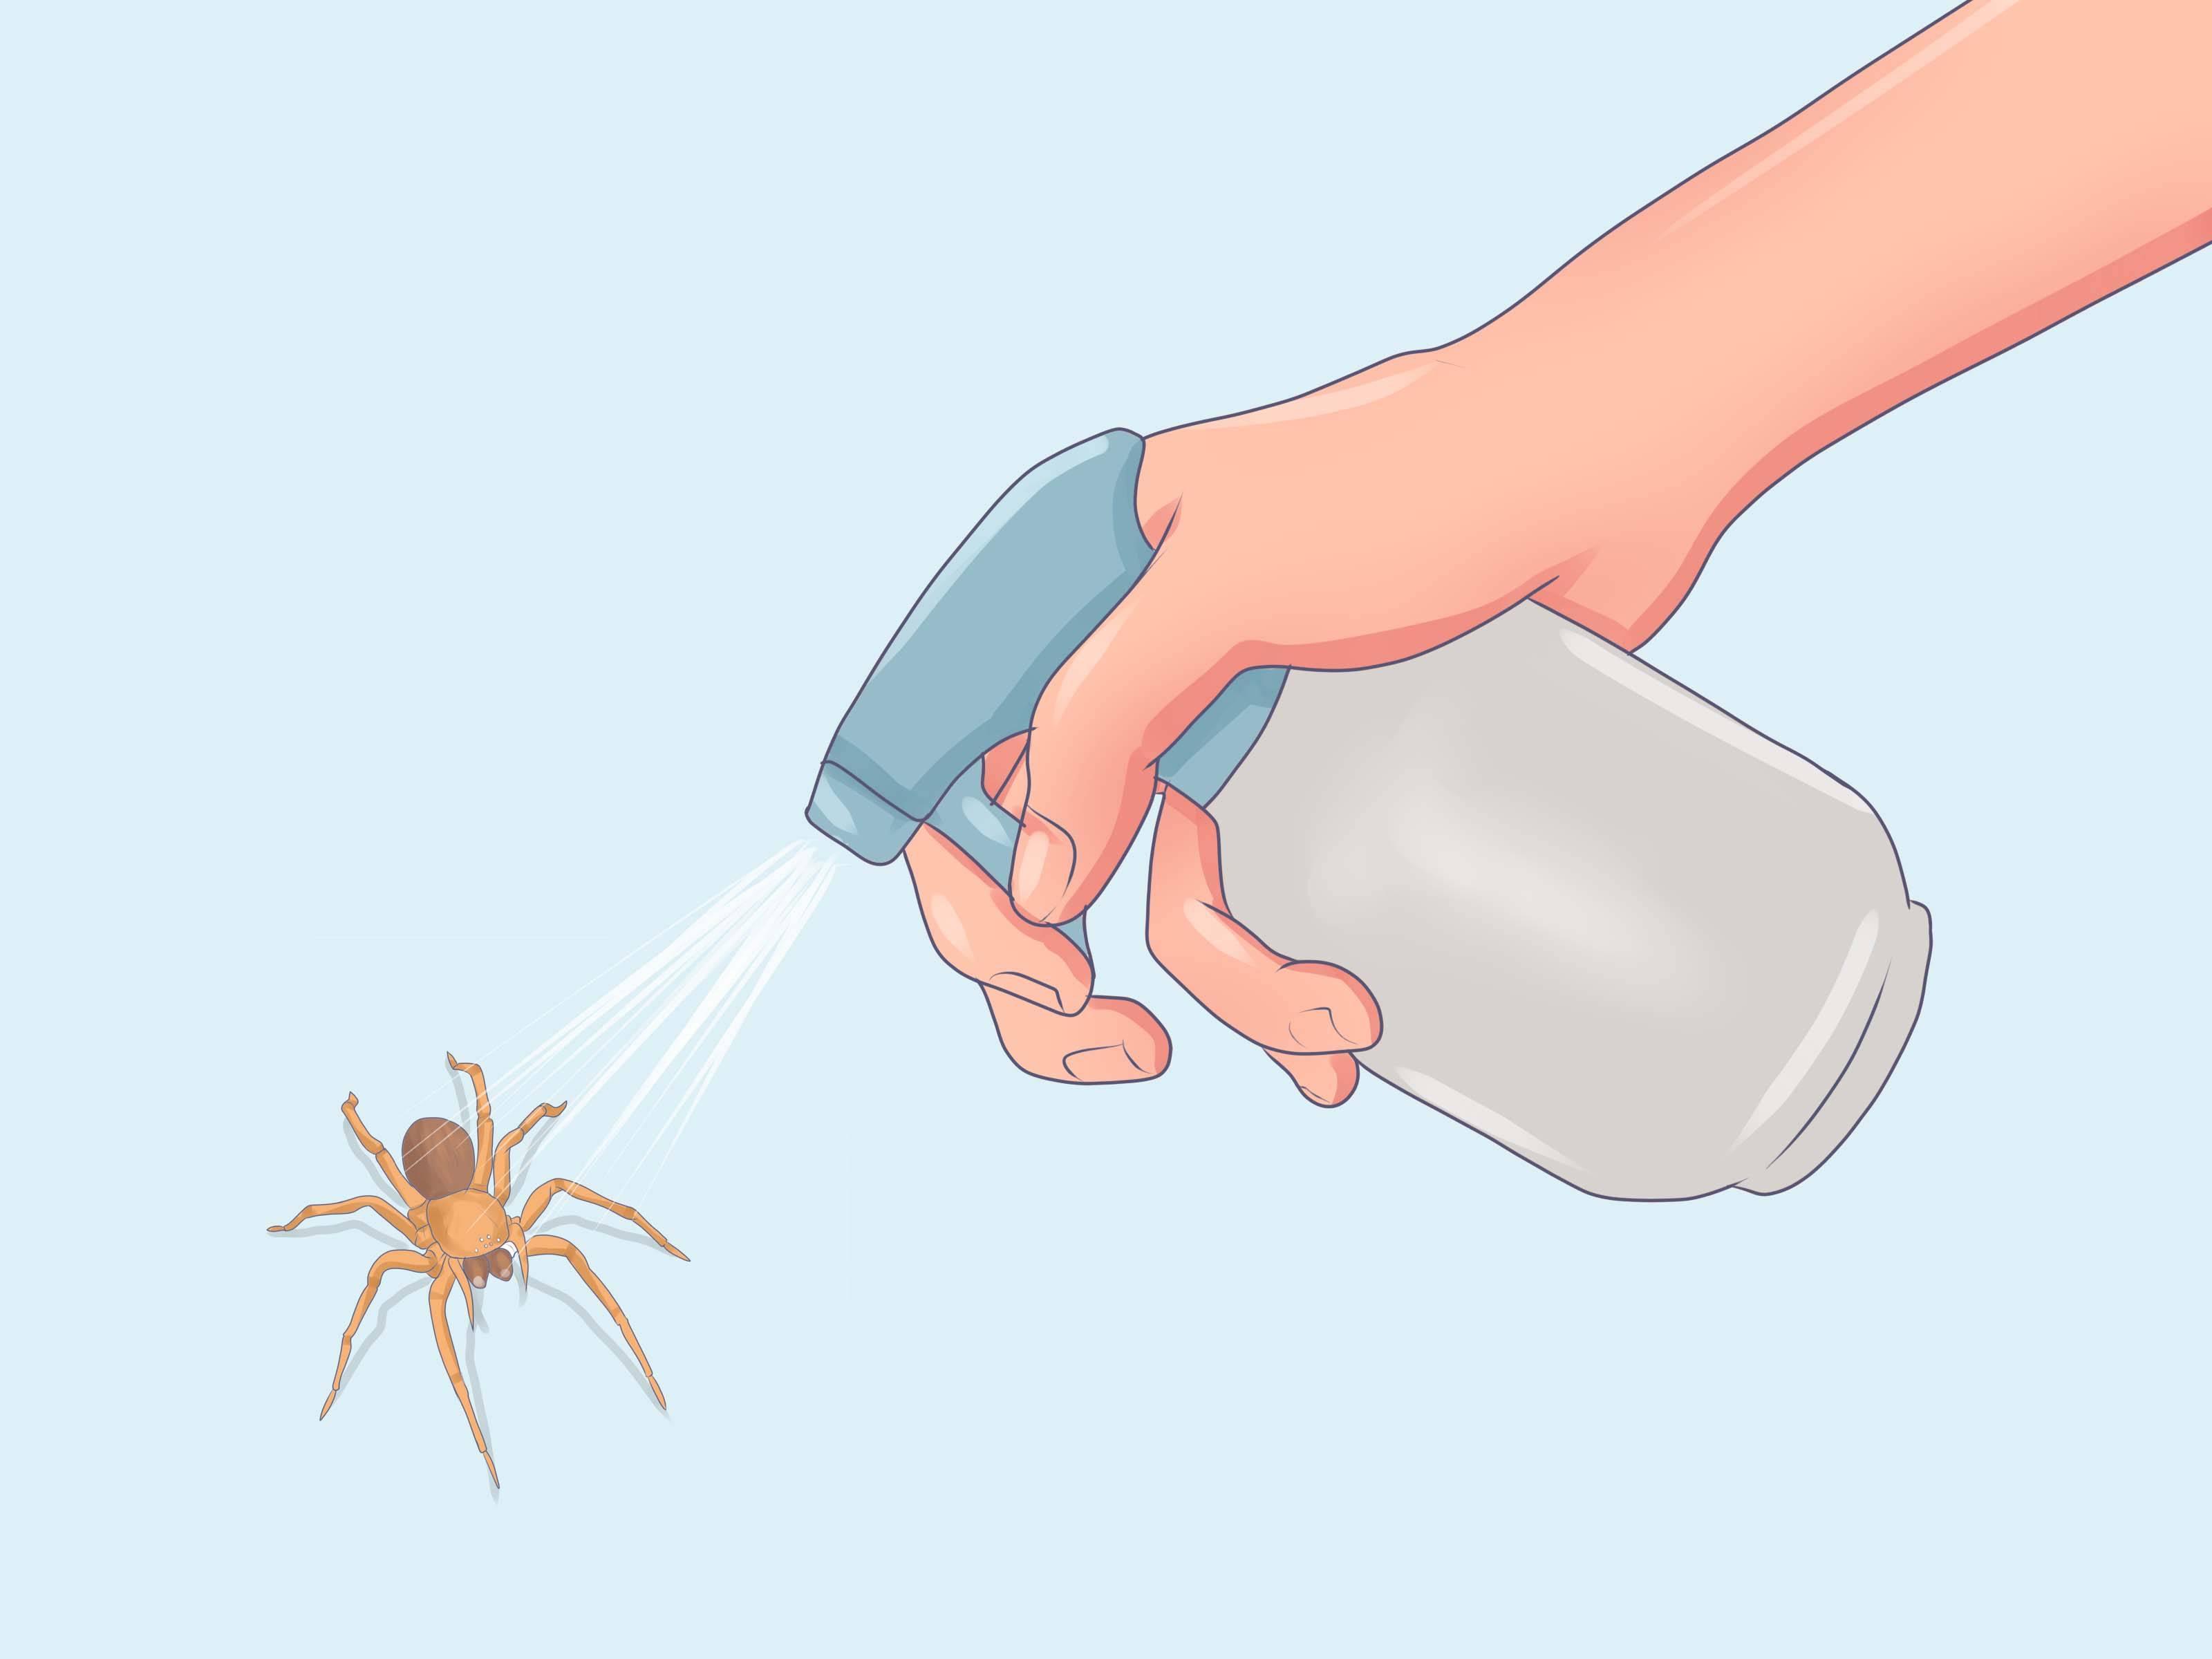 Как избавиться от пауков в доме: популярные способы